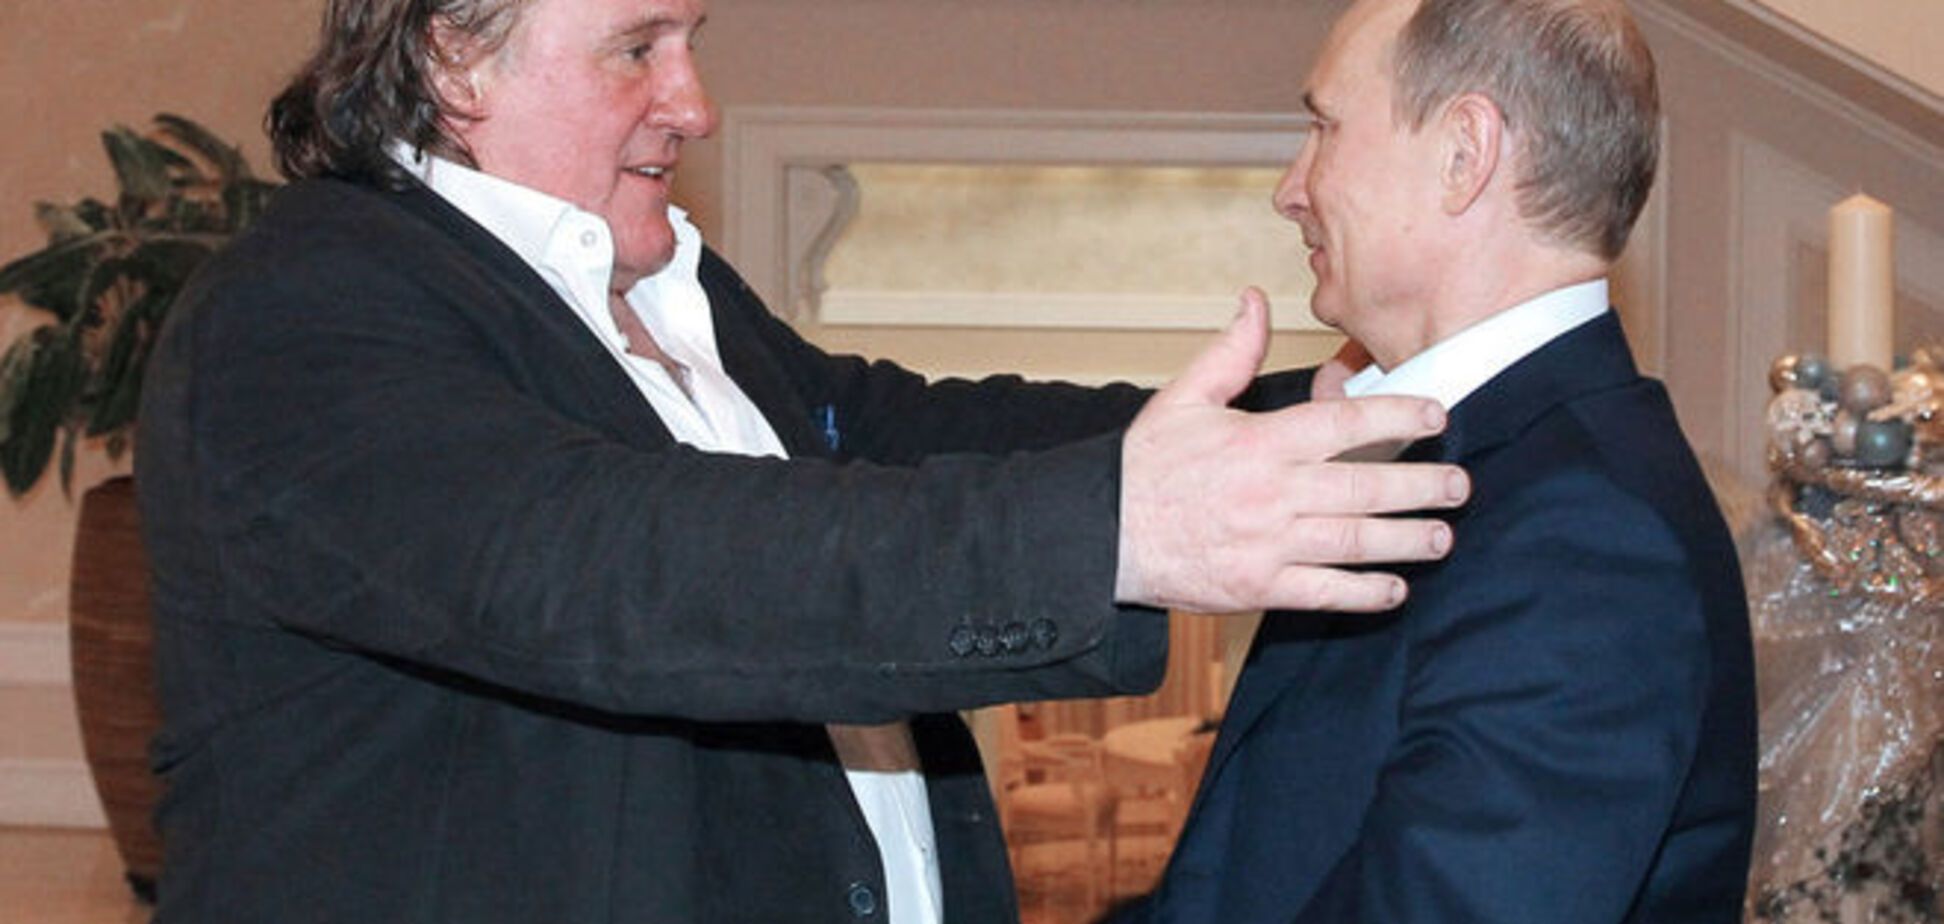 Раніше Депардьє про Путіна говорив тільки матом - Ющенко 